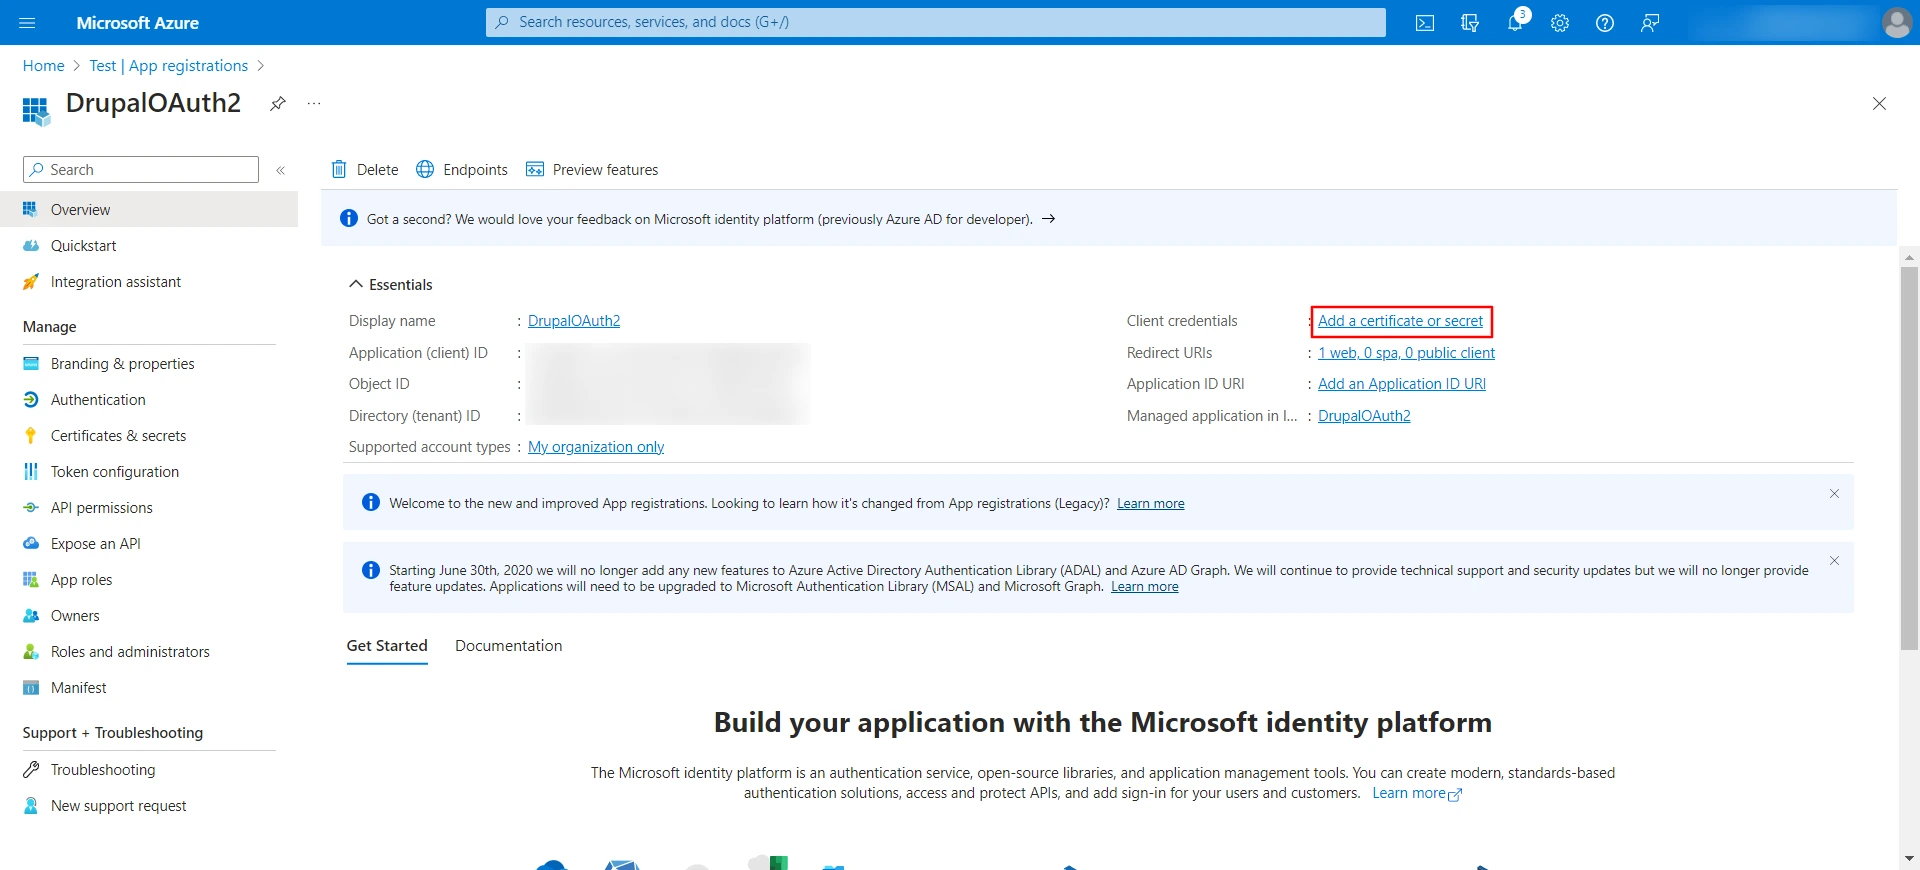 DrupalOAuth2 Microsoft Azure O365 - Add a client secret